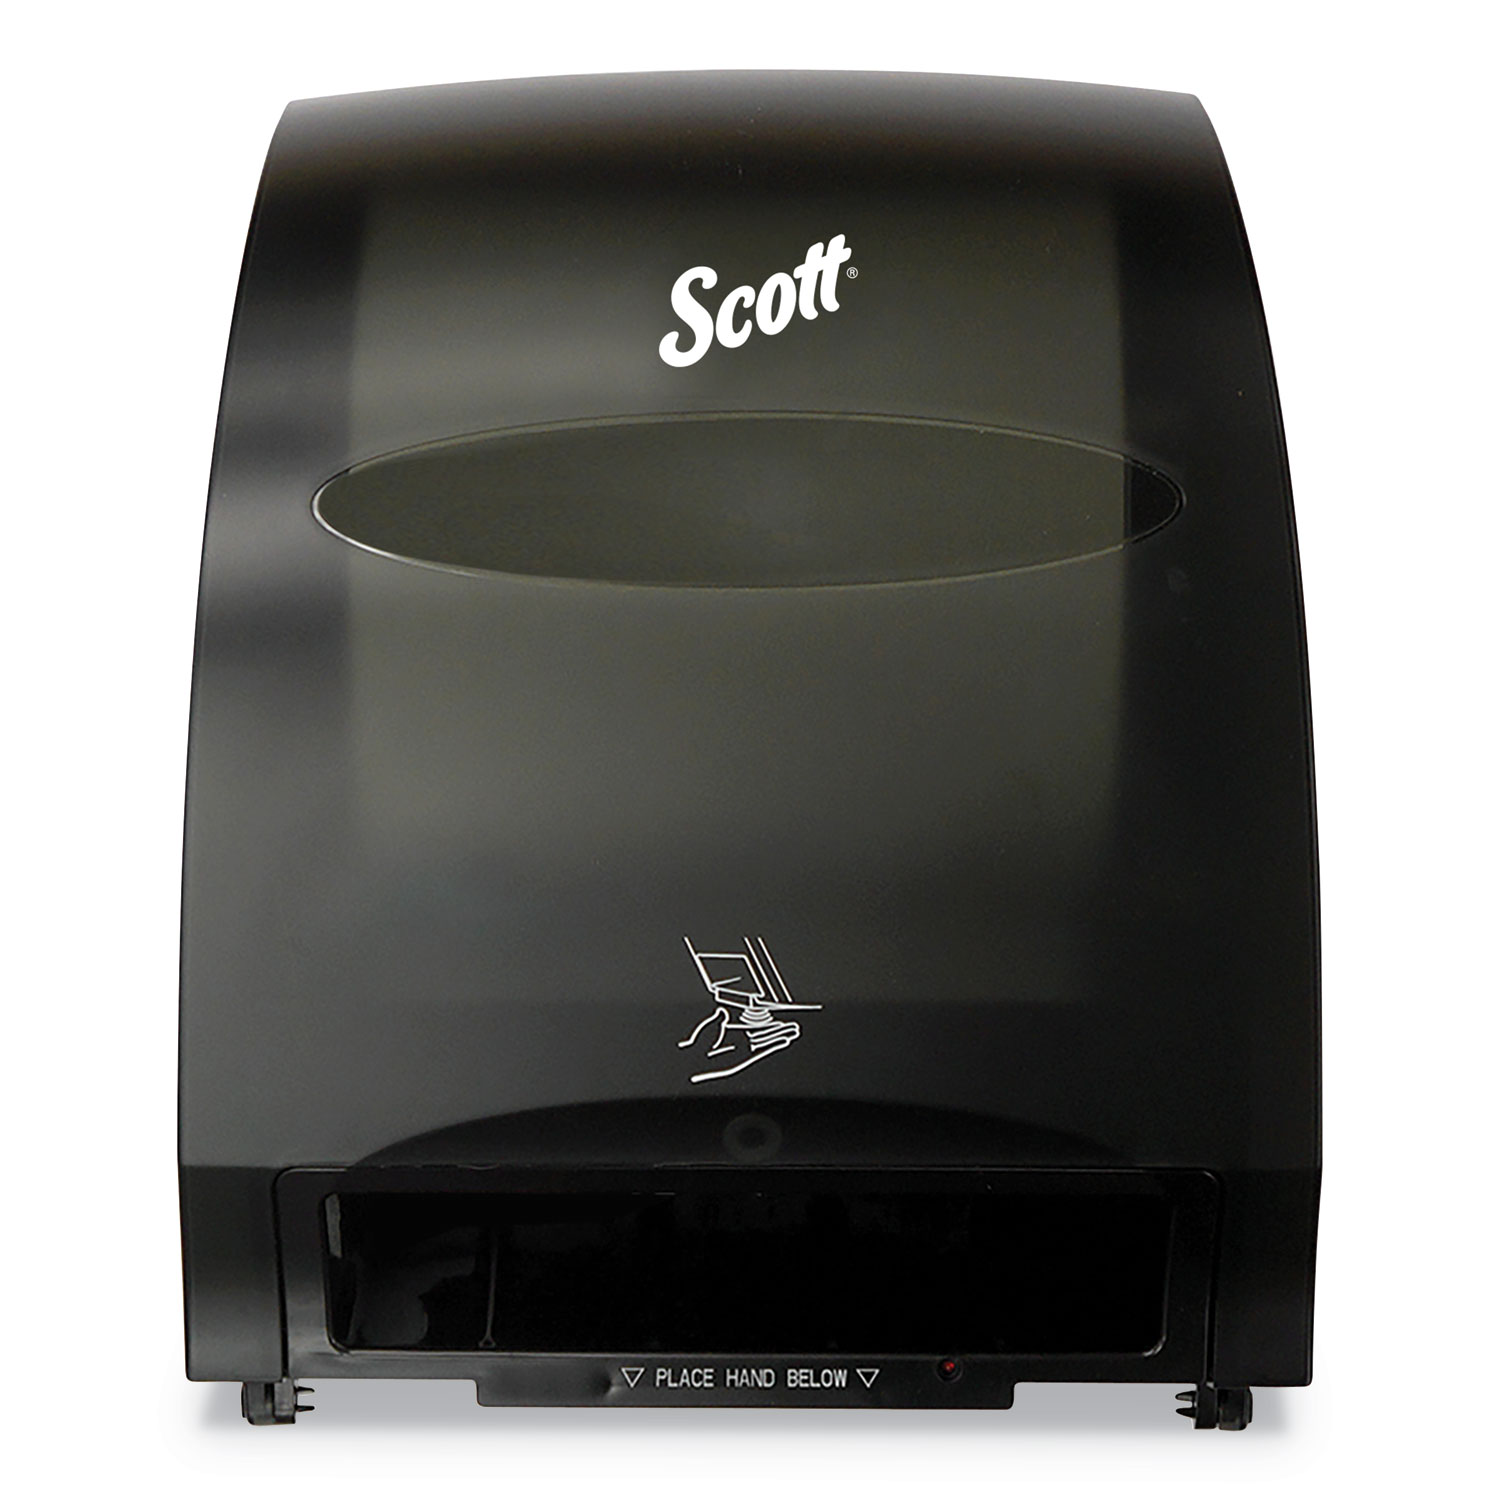 Scott® Essential™ System Hard Roll Towel Dispenser - Black, 12.7 x 15.76 x 9.57